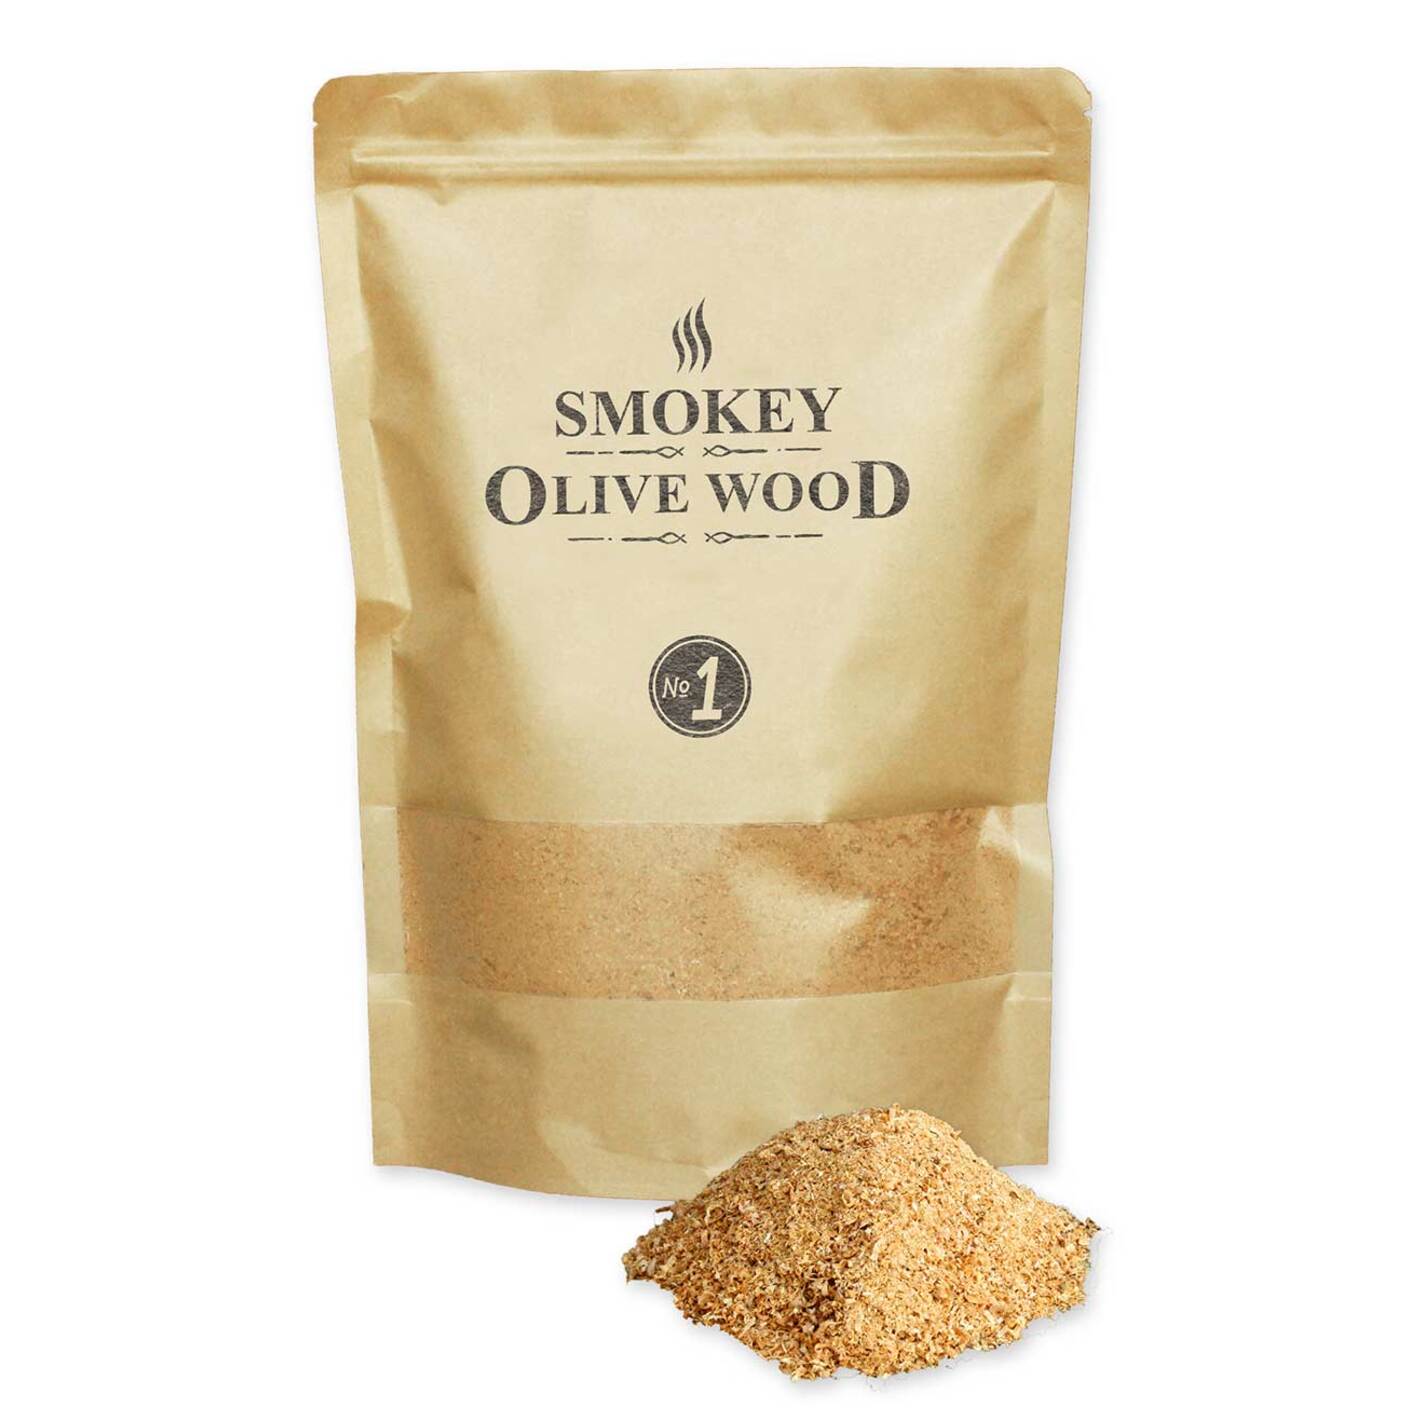 Olivier chêne Vert et citronnier pour Pipe fumoir Smokey Olive Wood Sow 3X 300mL Sélection de copeaux de Bois Taille Nº1.5 